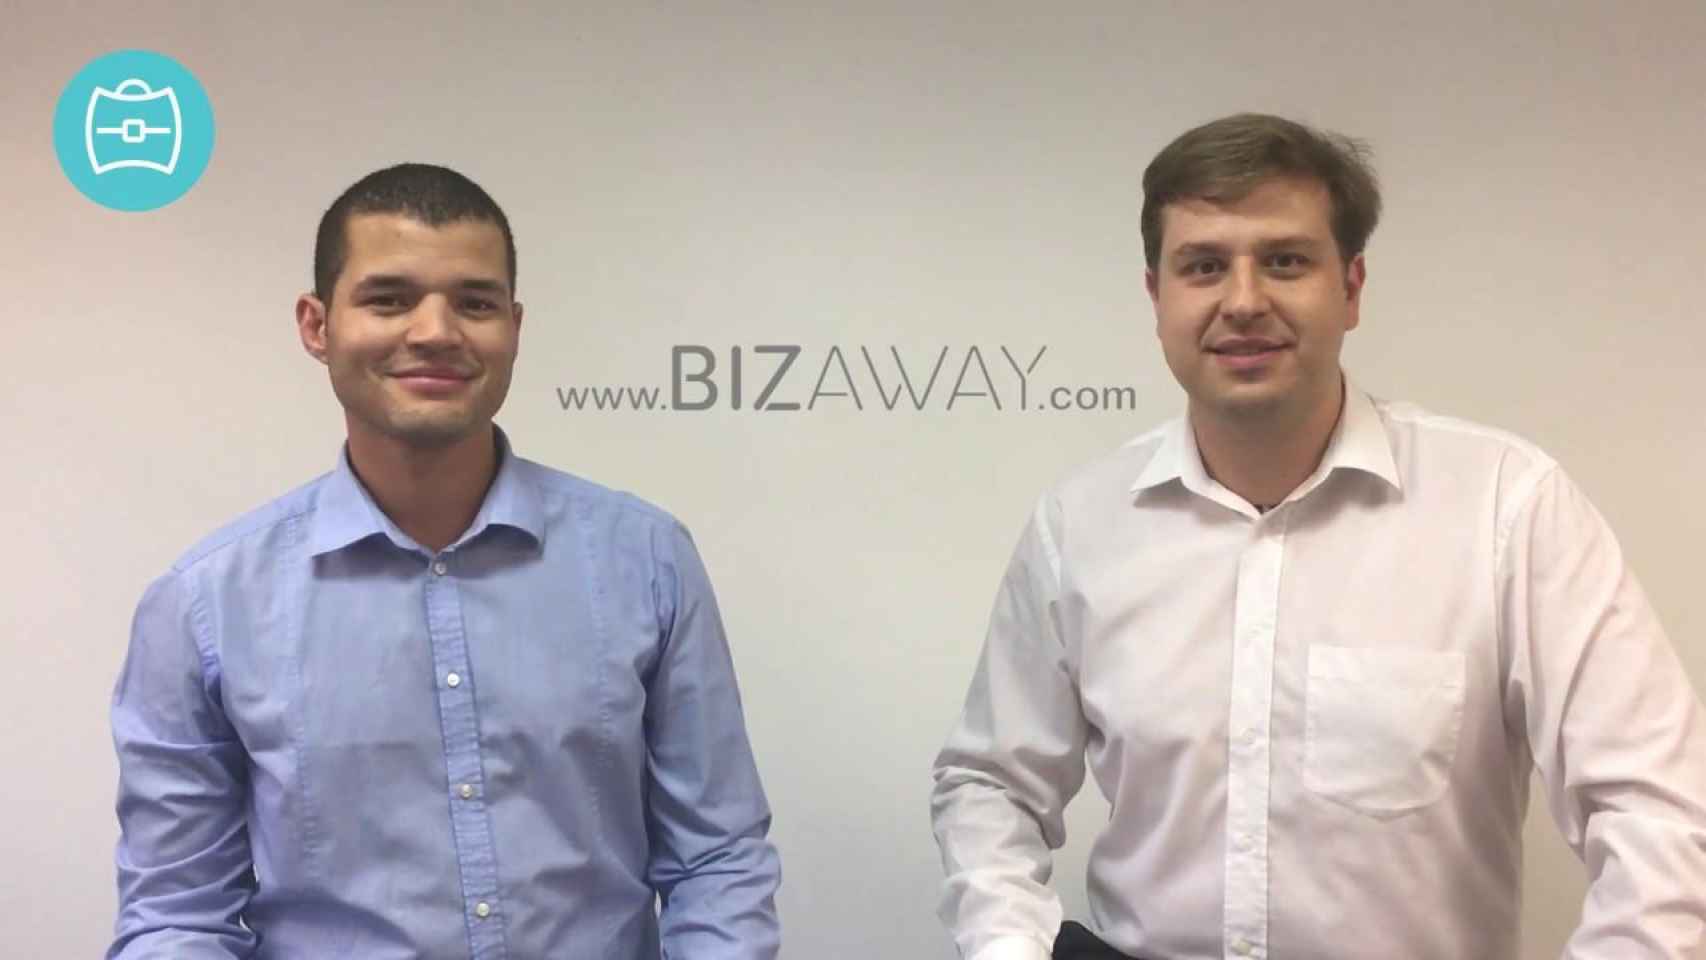 Luca Carlucci y Flavio Del Bianco CEOS de Bizaway / BIZAWAY